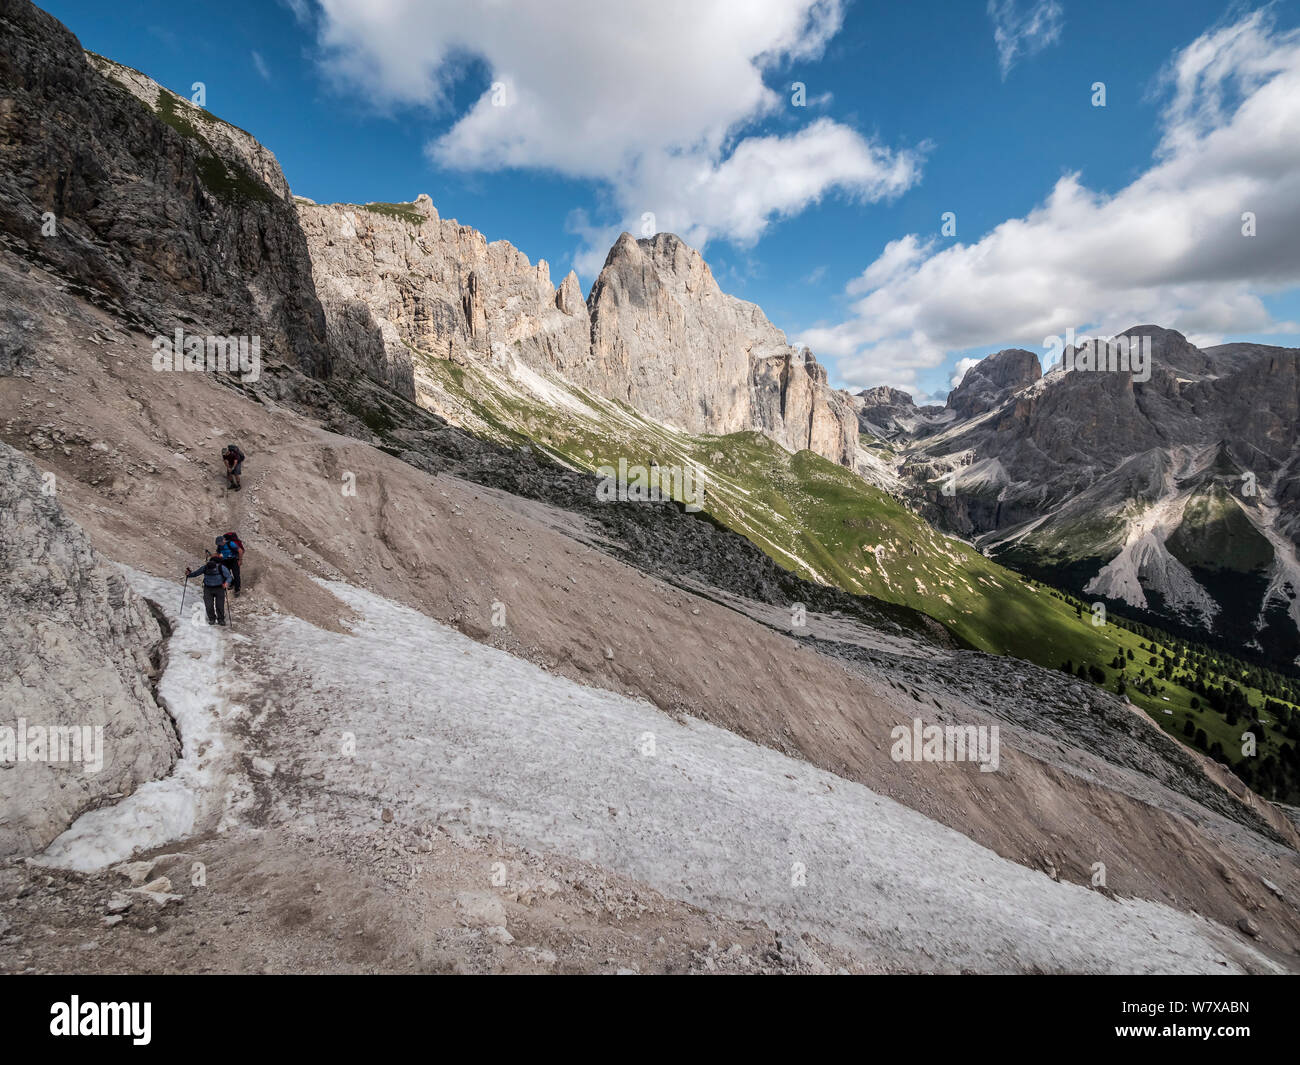 Les randonneurs profitez des paysages de montagnes escarpées, en route vers le refuge de montagne refuge Rotwand dans la région de Rosengarten des Dolomites italiennes du Haut-Adige Banque D'Images